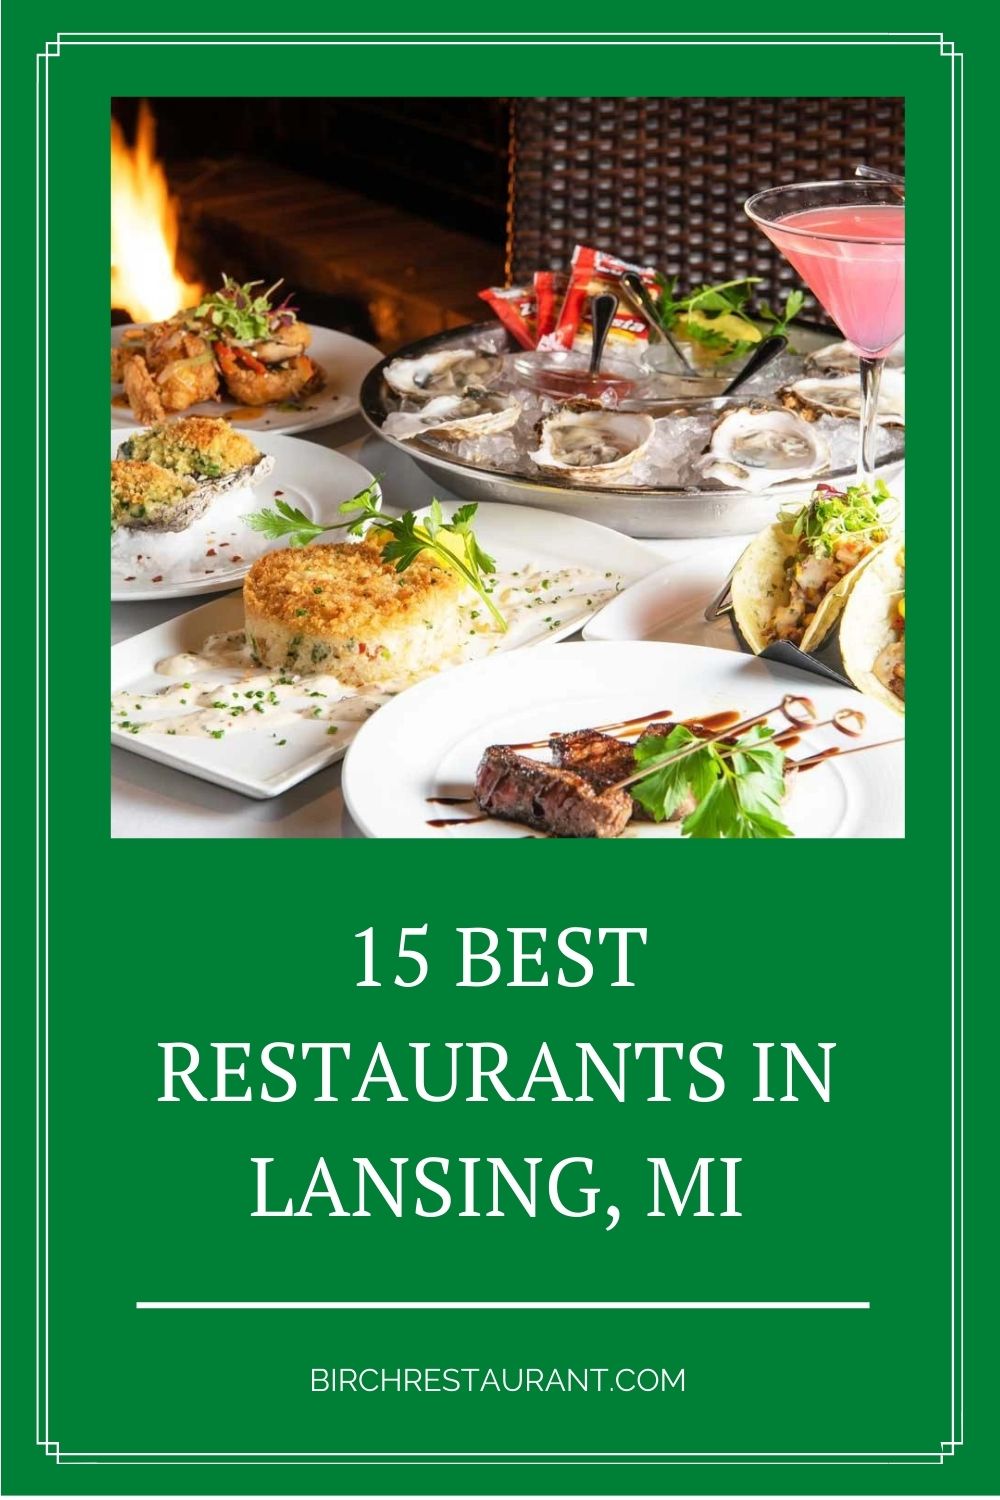 Best Restaurants in Lansing